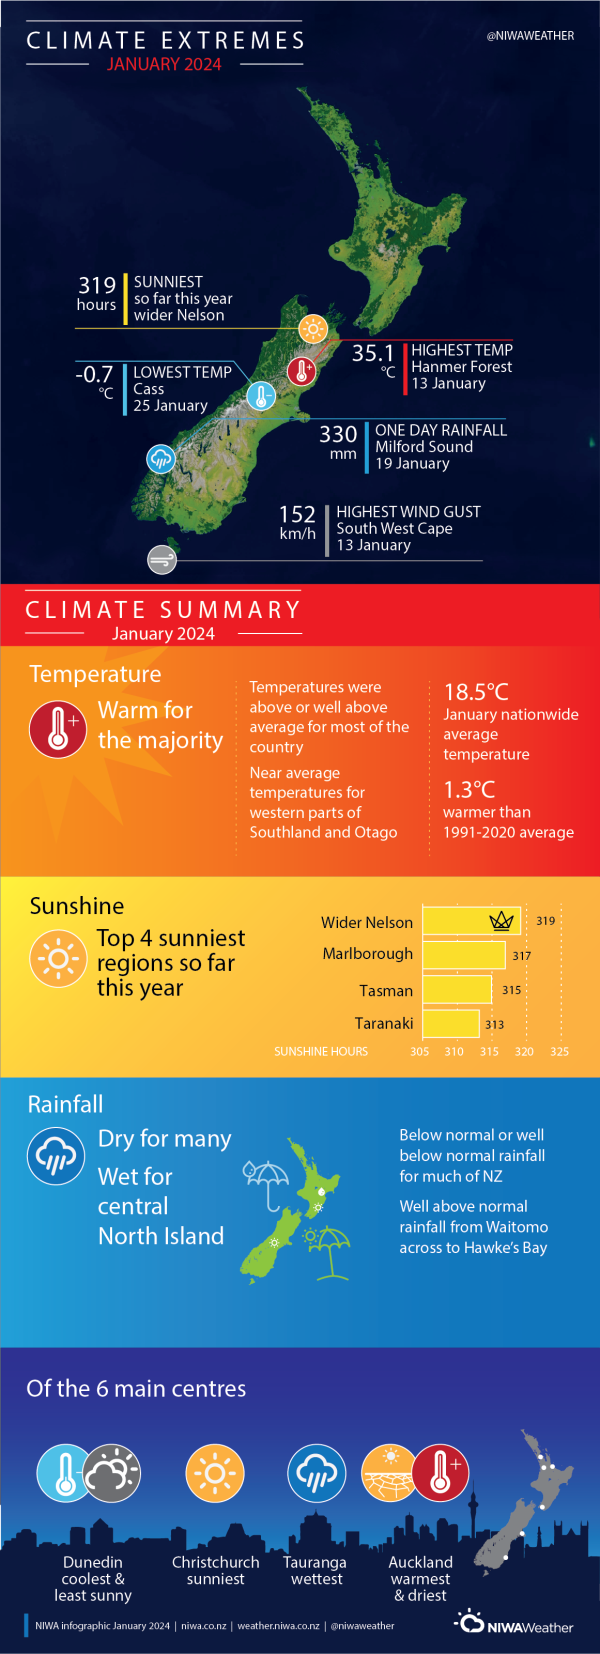 Climate extremes summary - January 2024